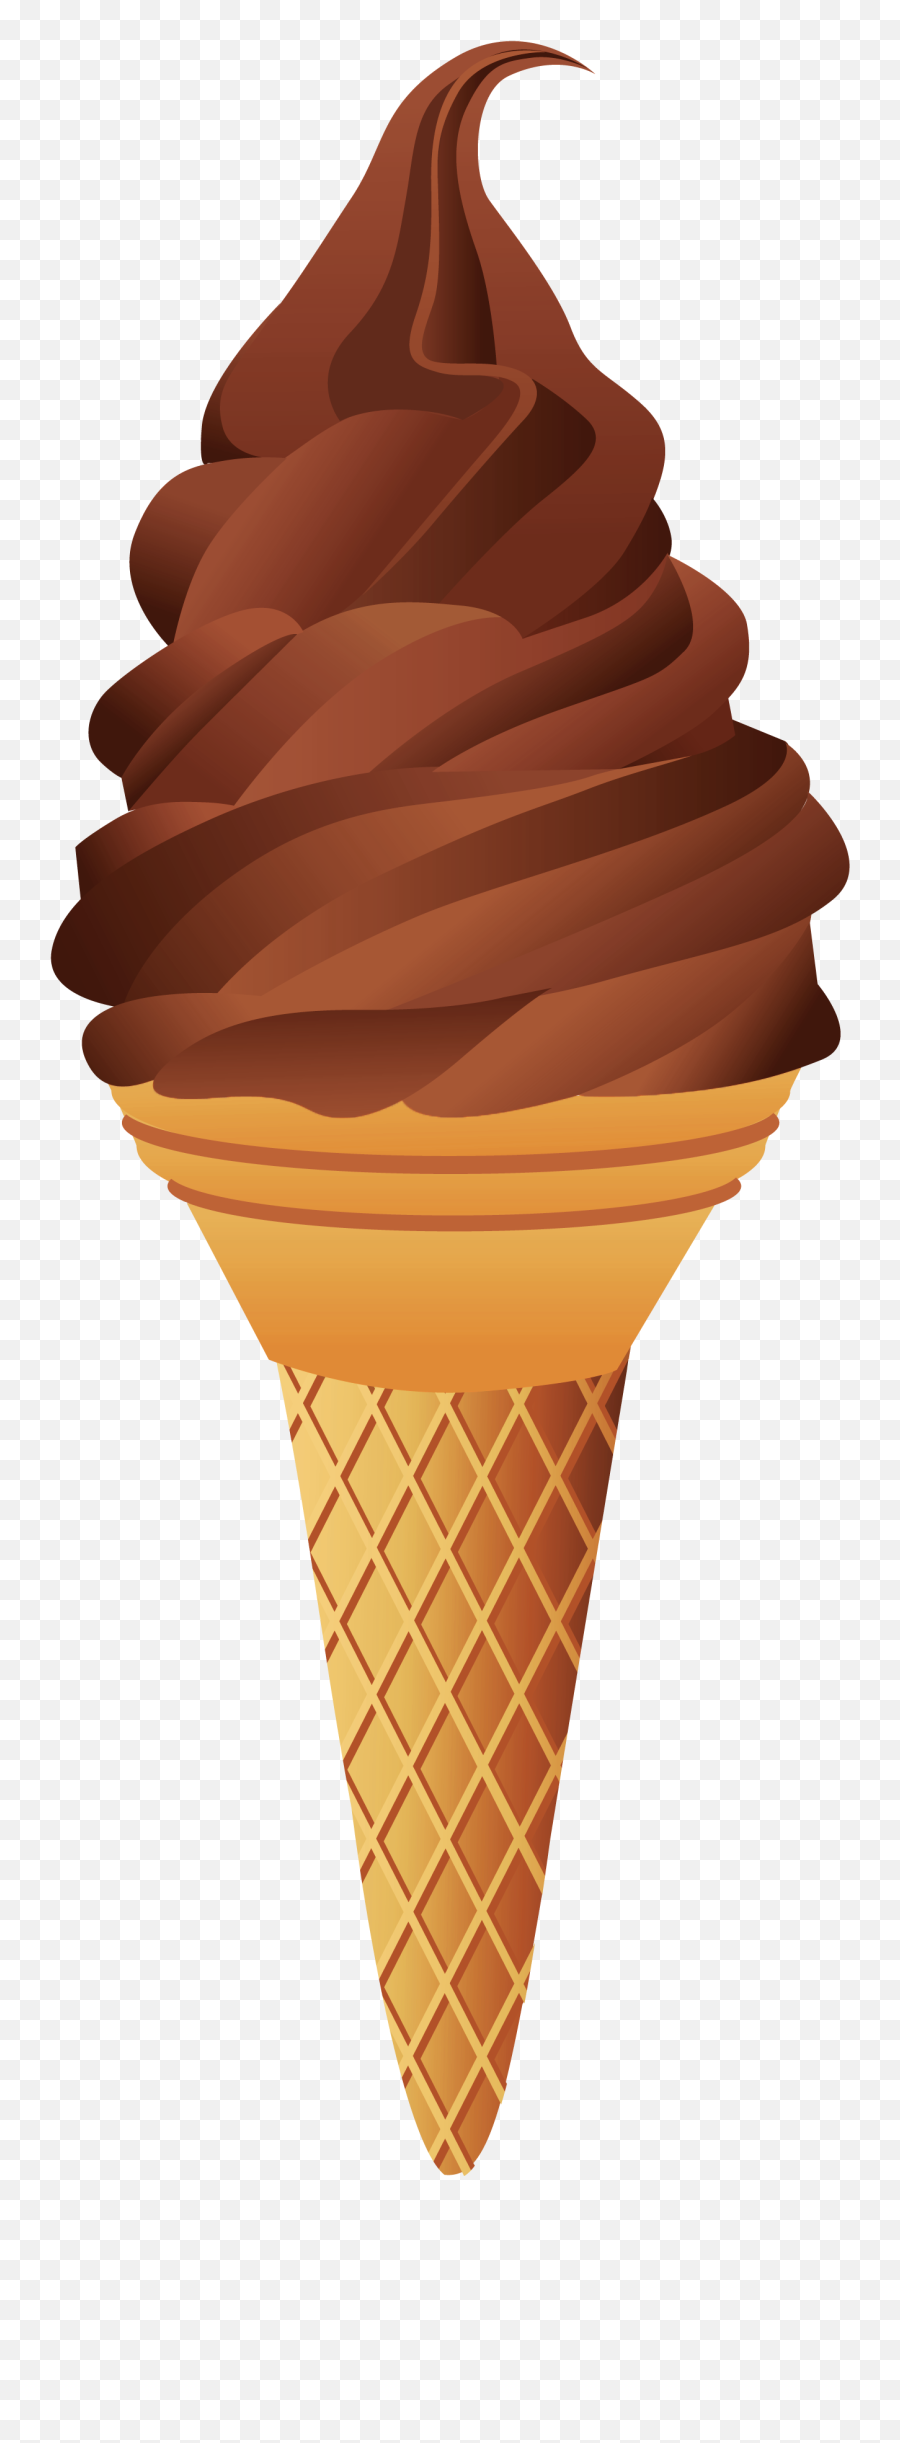 Chocolate Ice Cream Cone - Transparent Background Ice Cream Png,Ice Cream Transparent